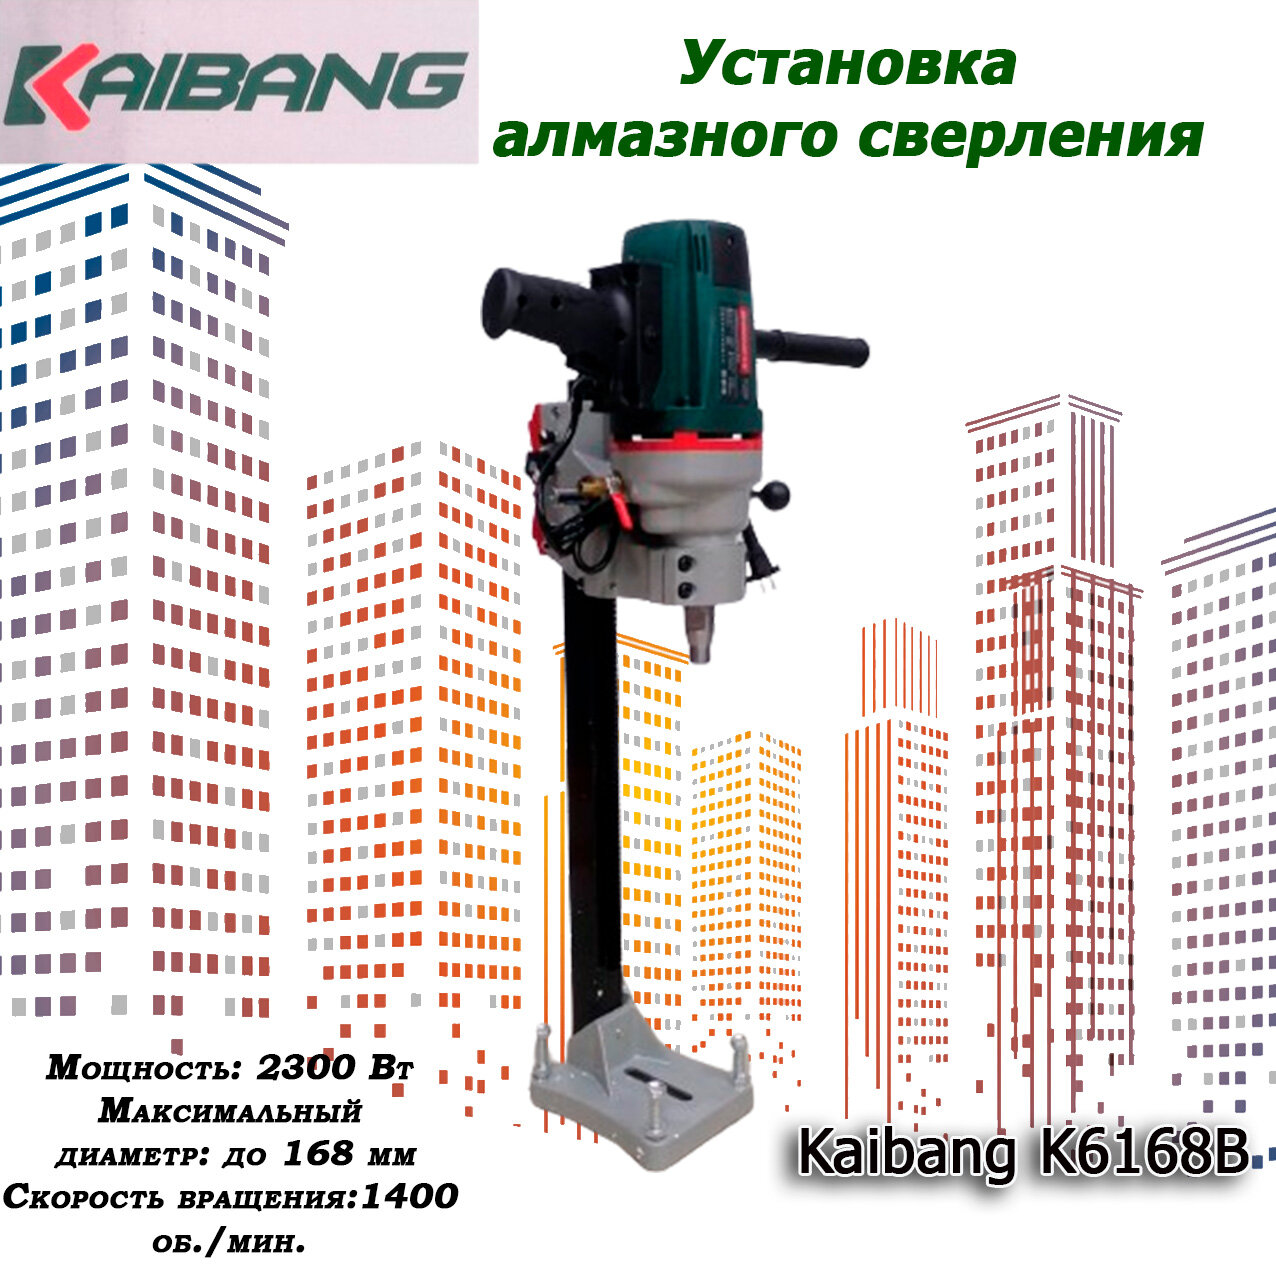 Установка алмазного сверления Kaibang K6168B